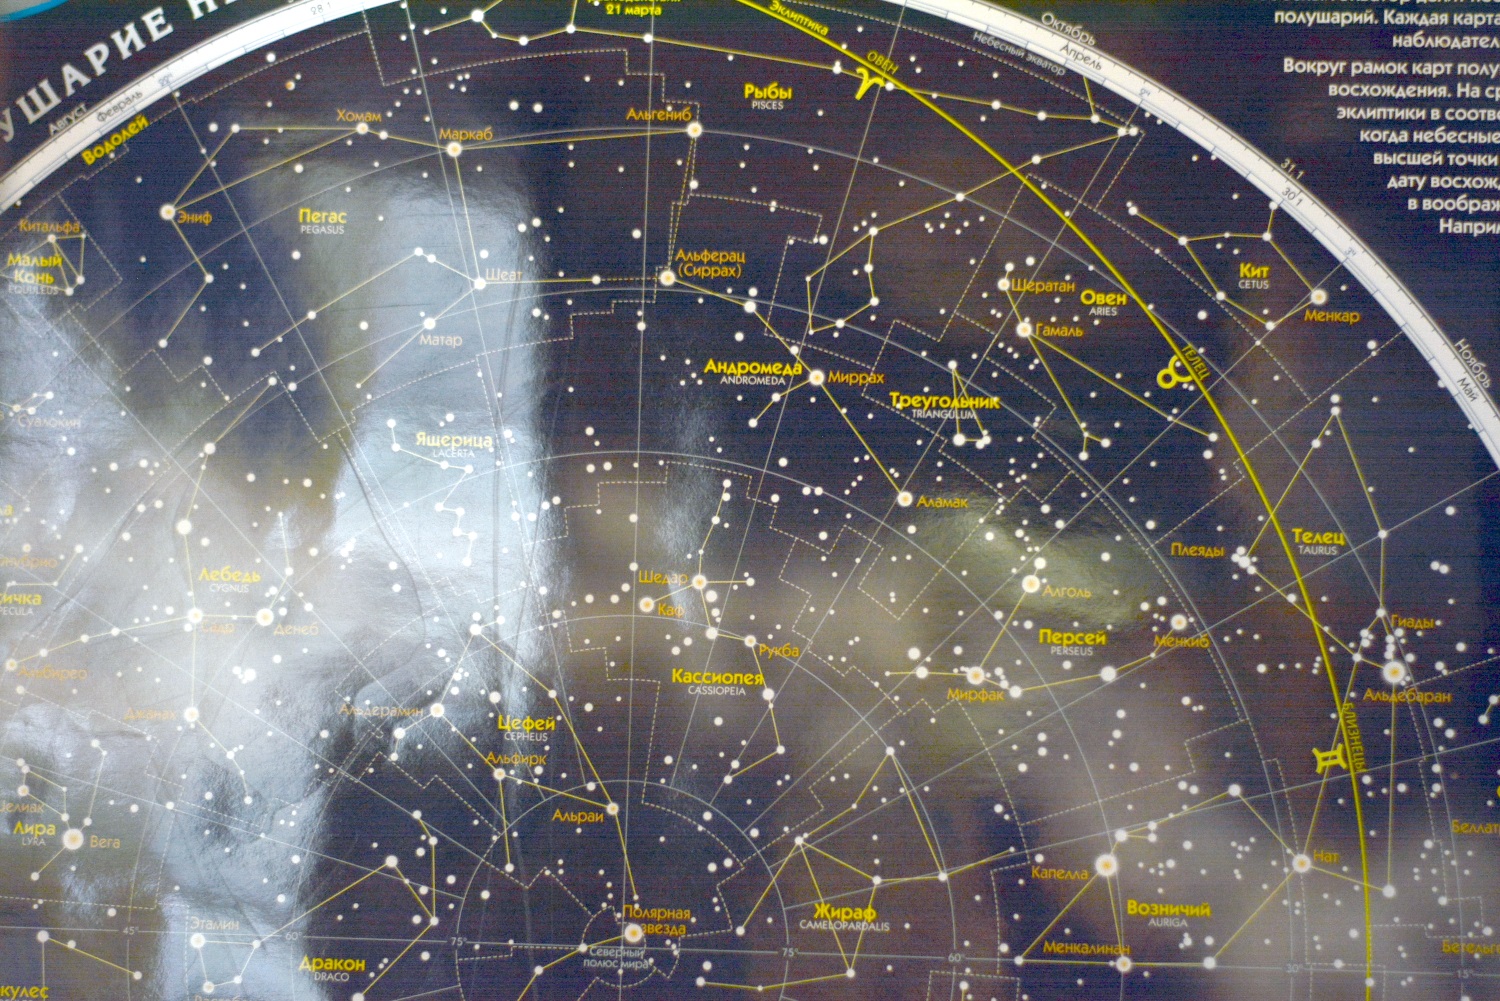 Космос как страсть. Руководитель астрономического клуба «Телескоп» Сергей Полищук – о расширении сознания и поиске жизни во Вселенной